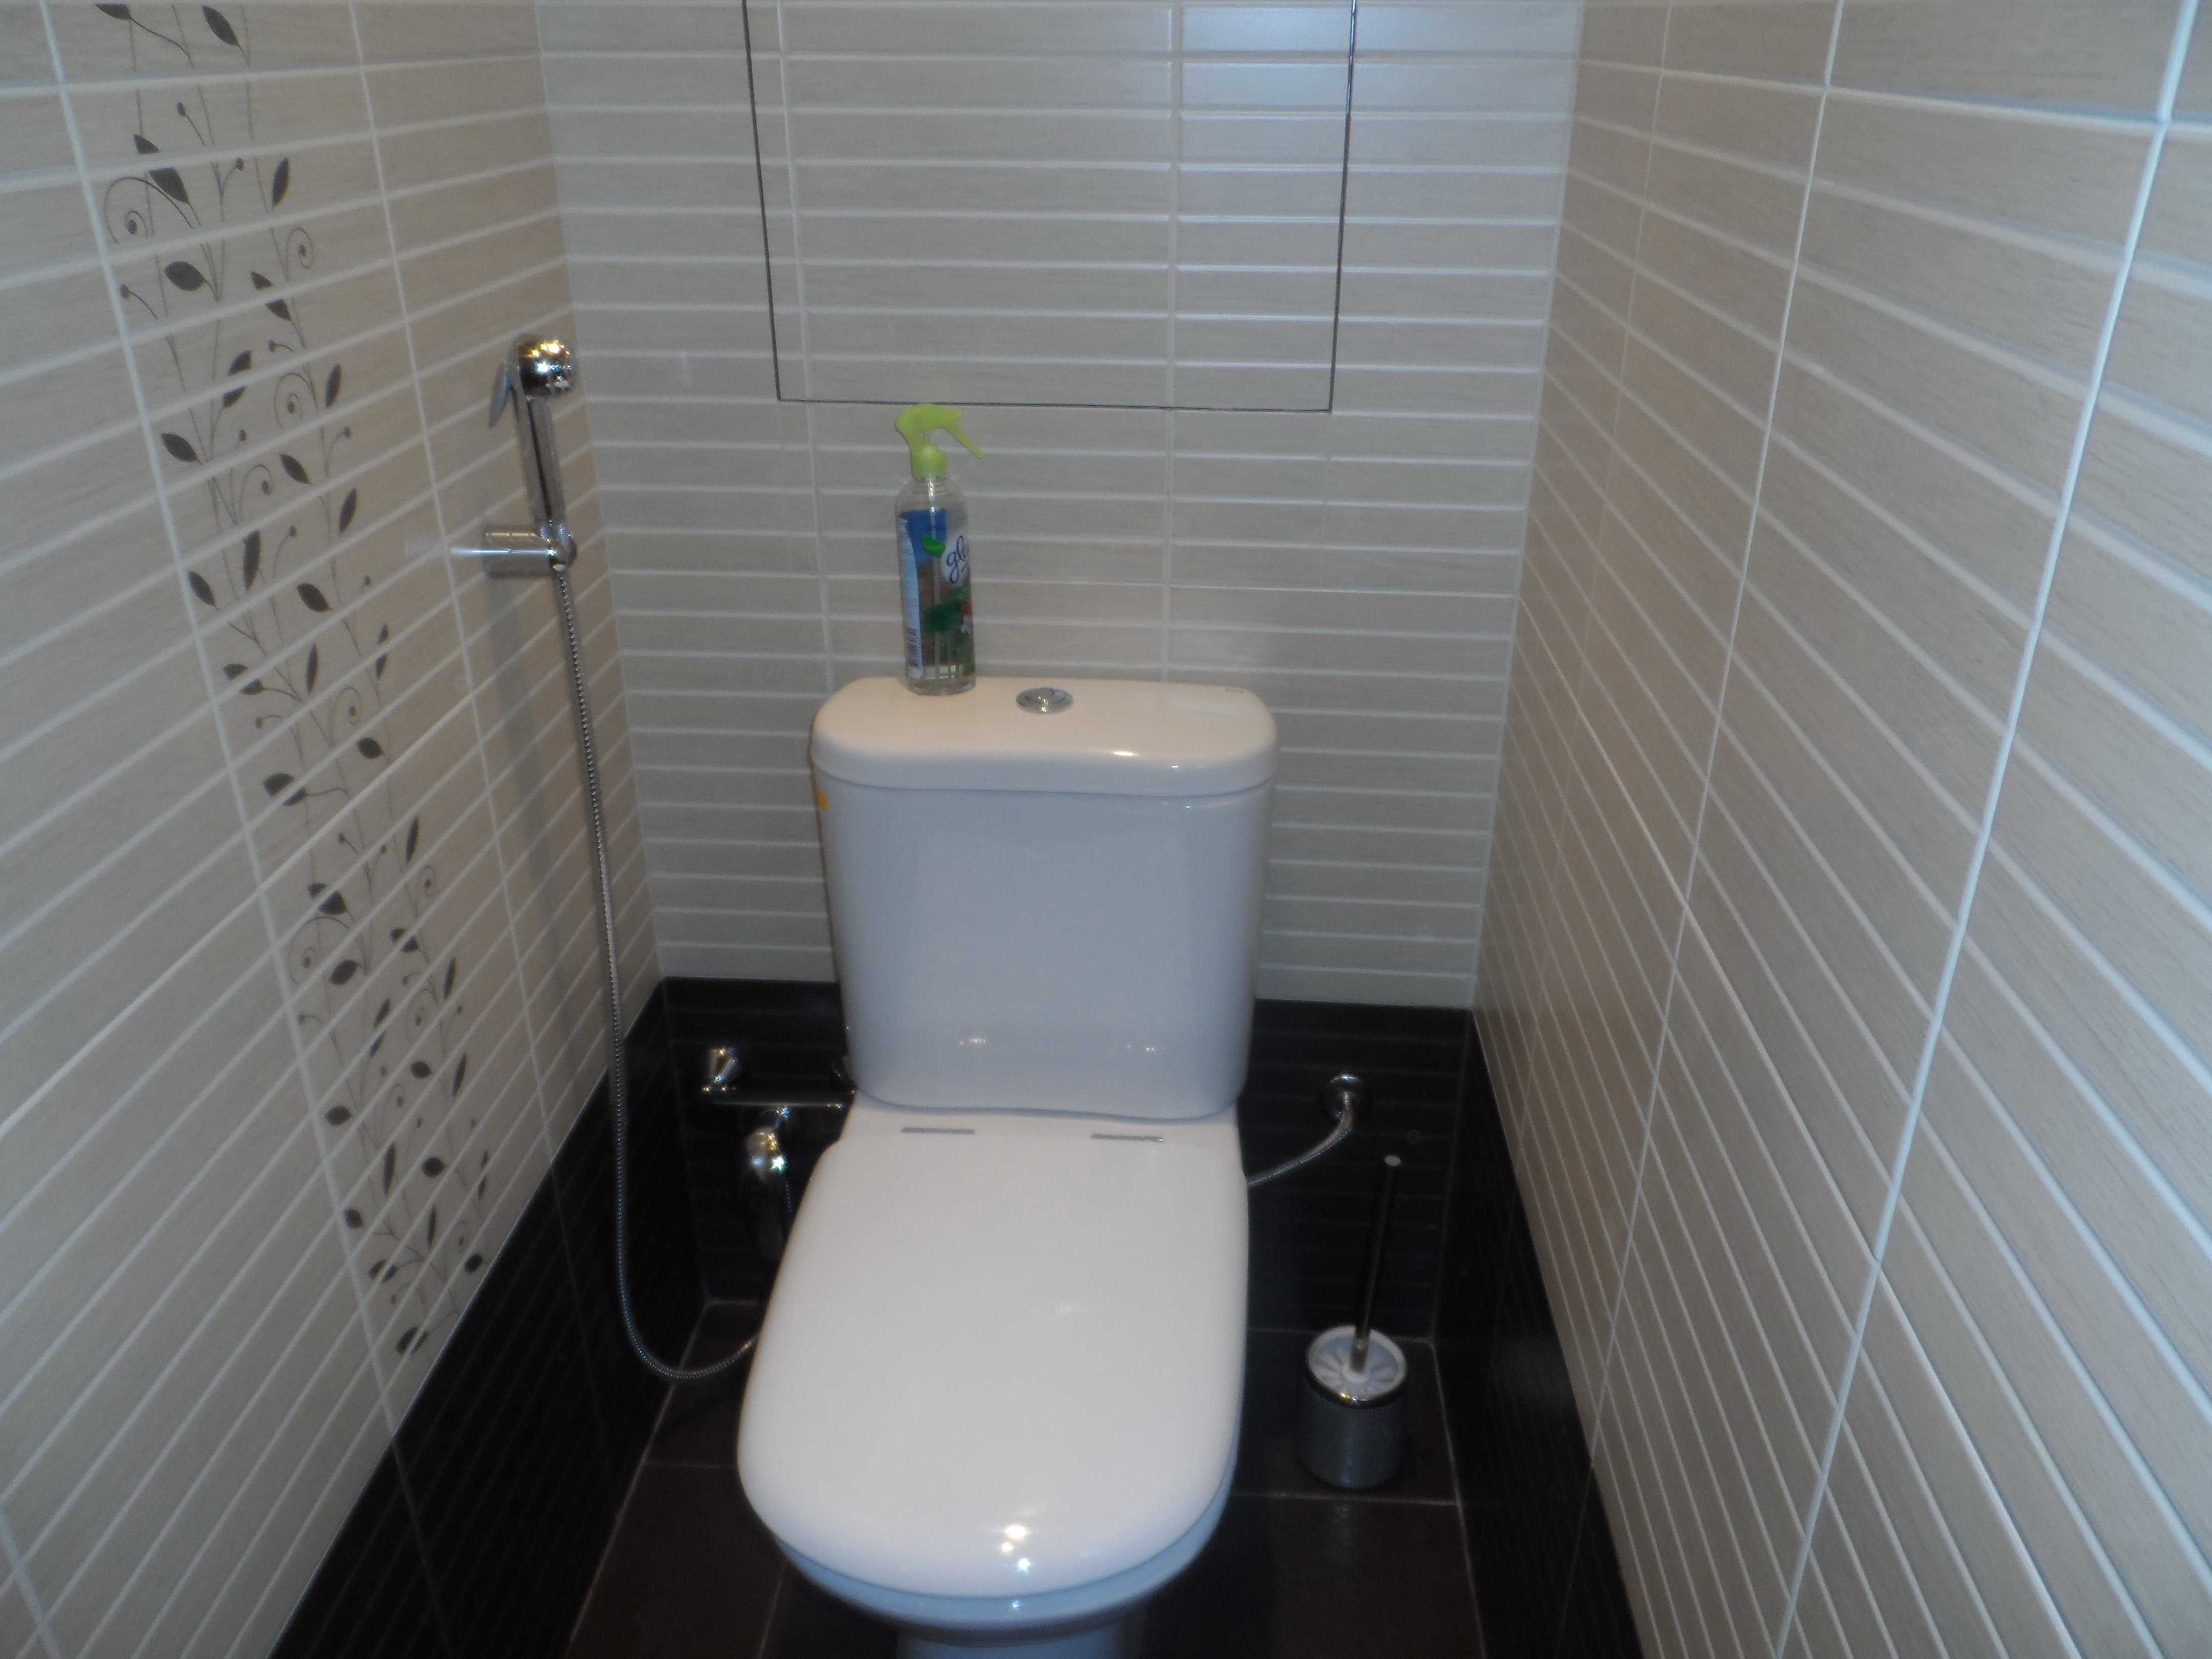 Ремонт санузла (73 фото): обновление интерьера в ванной комнате совмещенной с туалетом своими руками, отделка и дизайн санузла